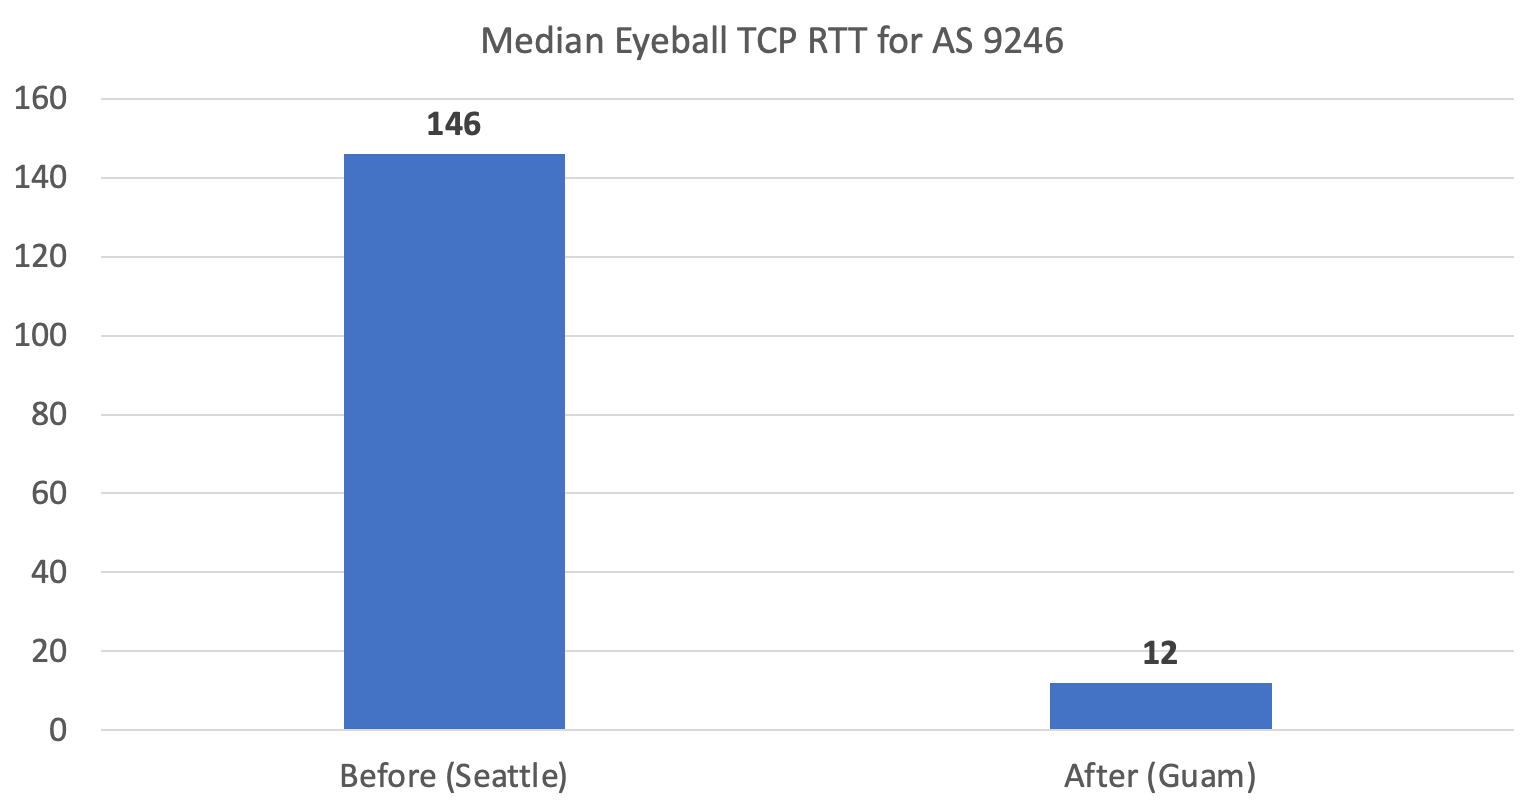 Figure 5 - Median Eyeball TCP RTT for AS 9246 from Seattle vs Guam.